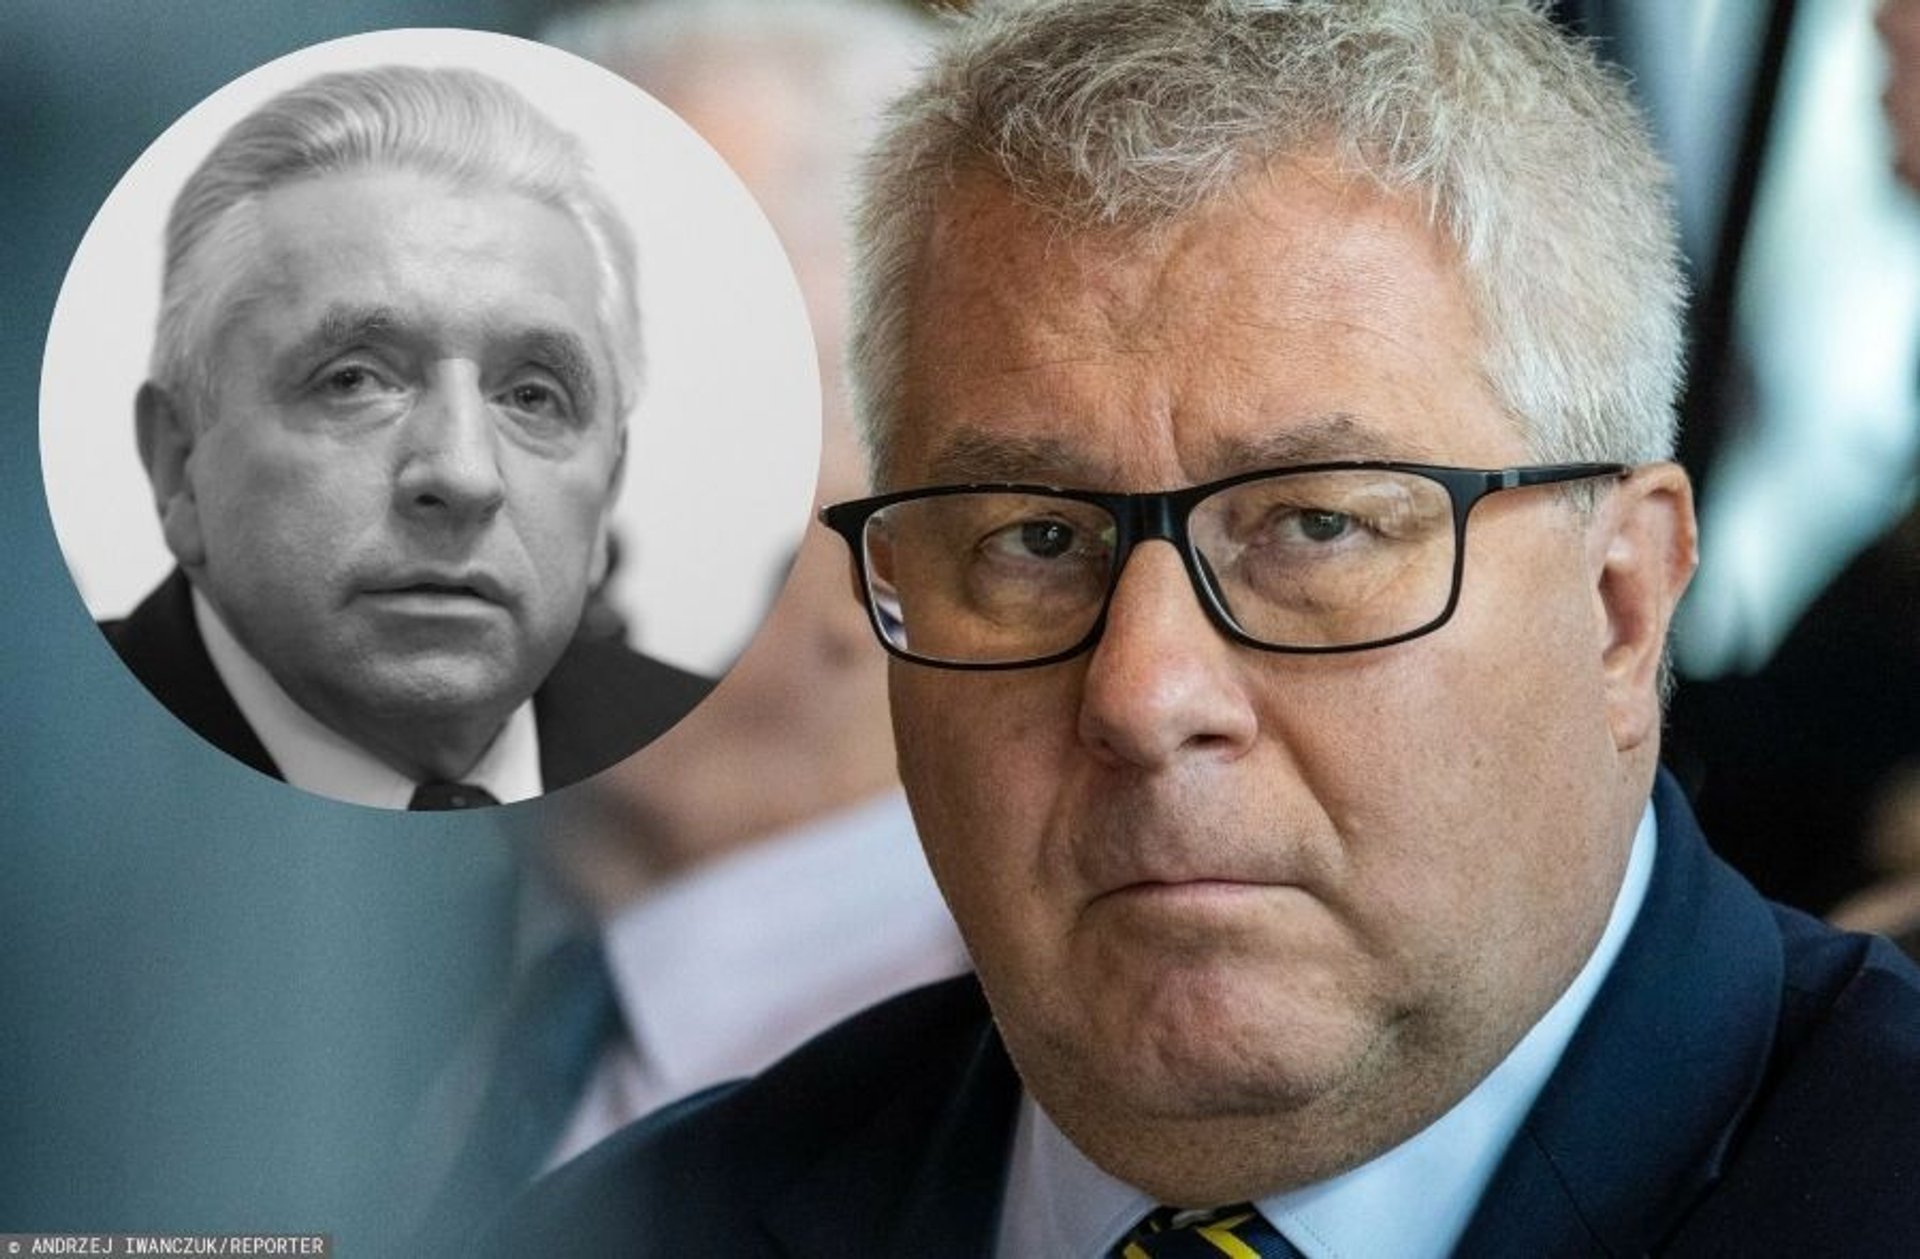 Ryszard Czarnecki nie ma wątpliwości ws. śmierci Andrzeja Leppera: "Tacy ludzie nie popełniają samobójstwa"